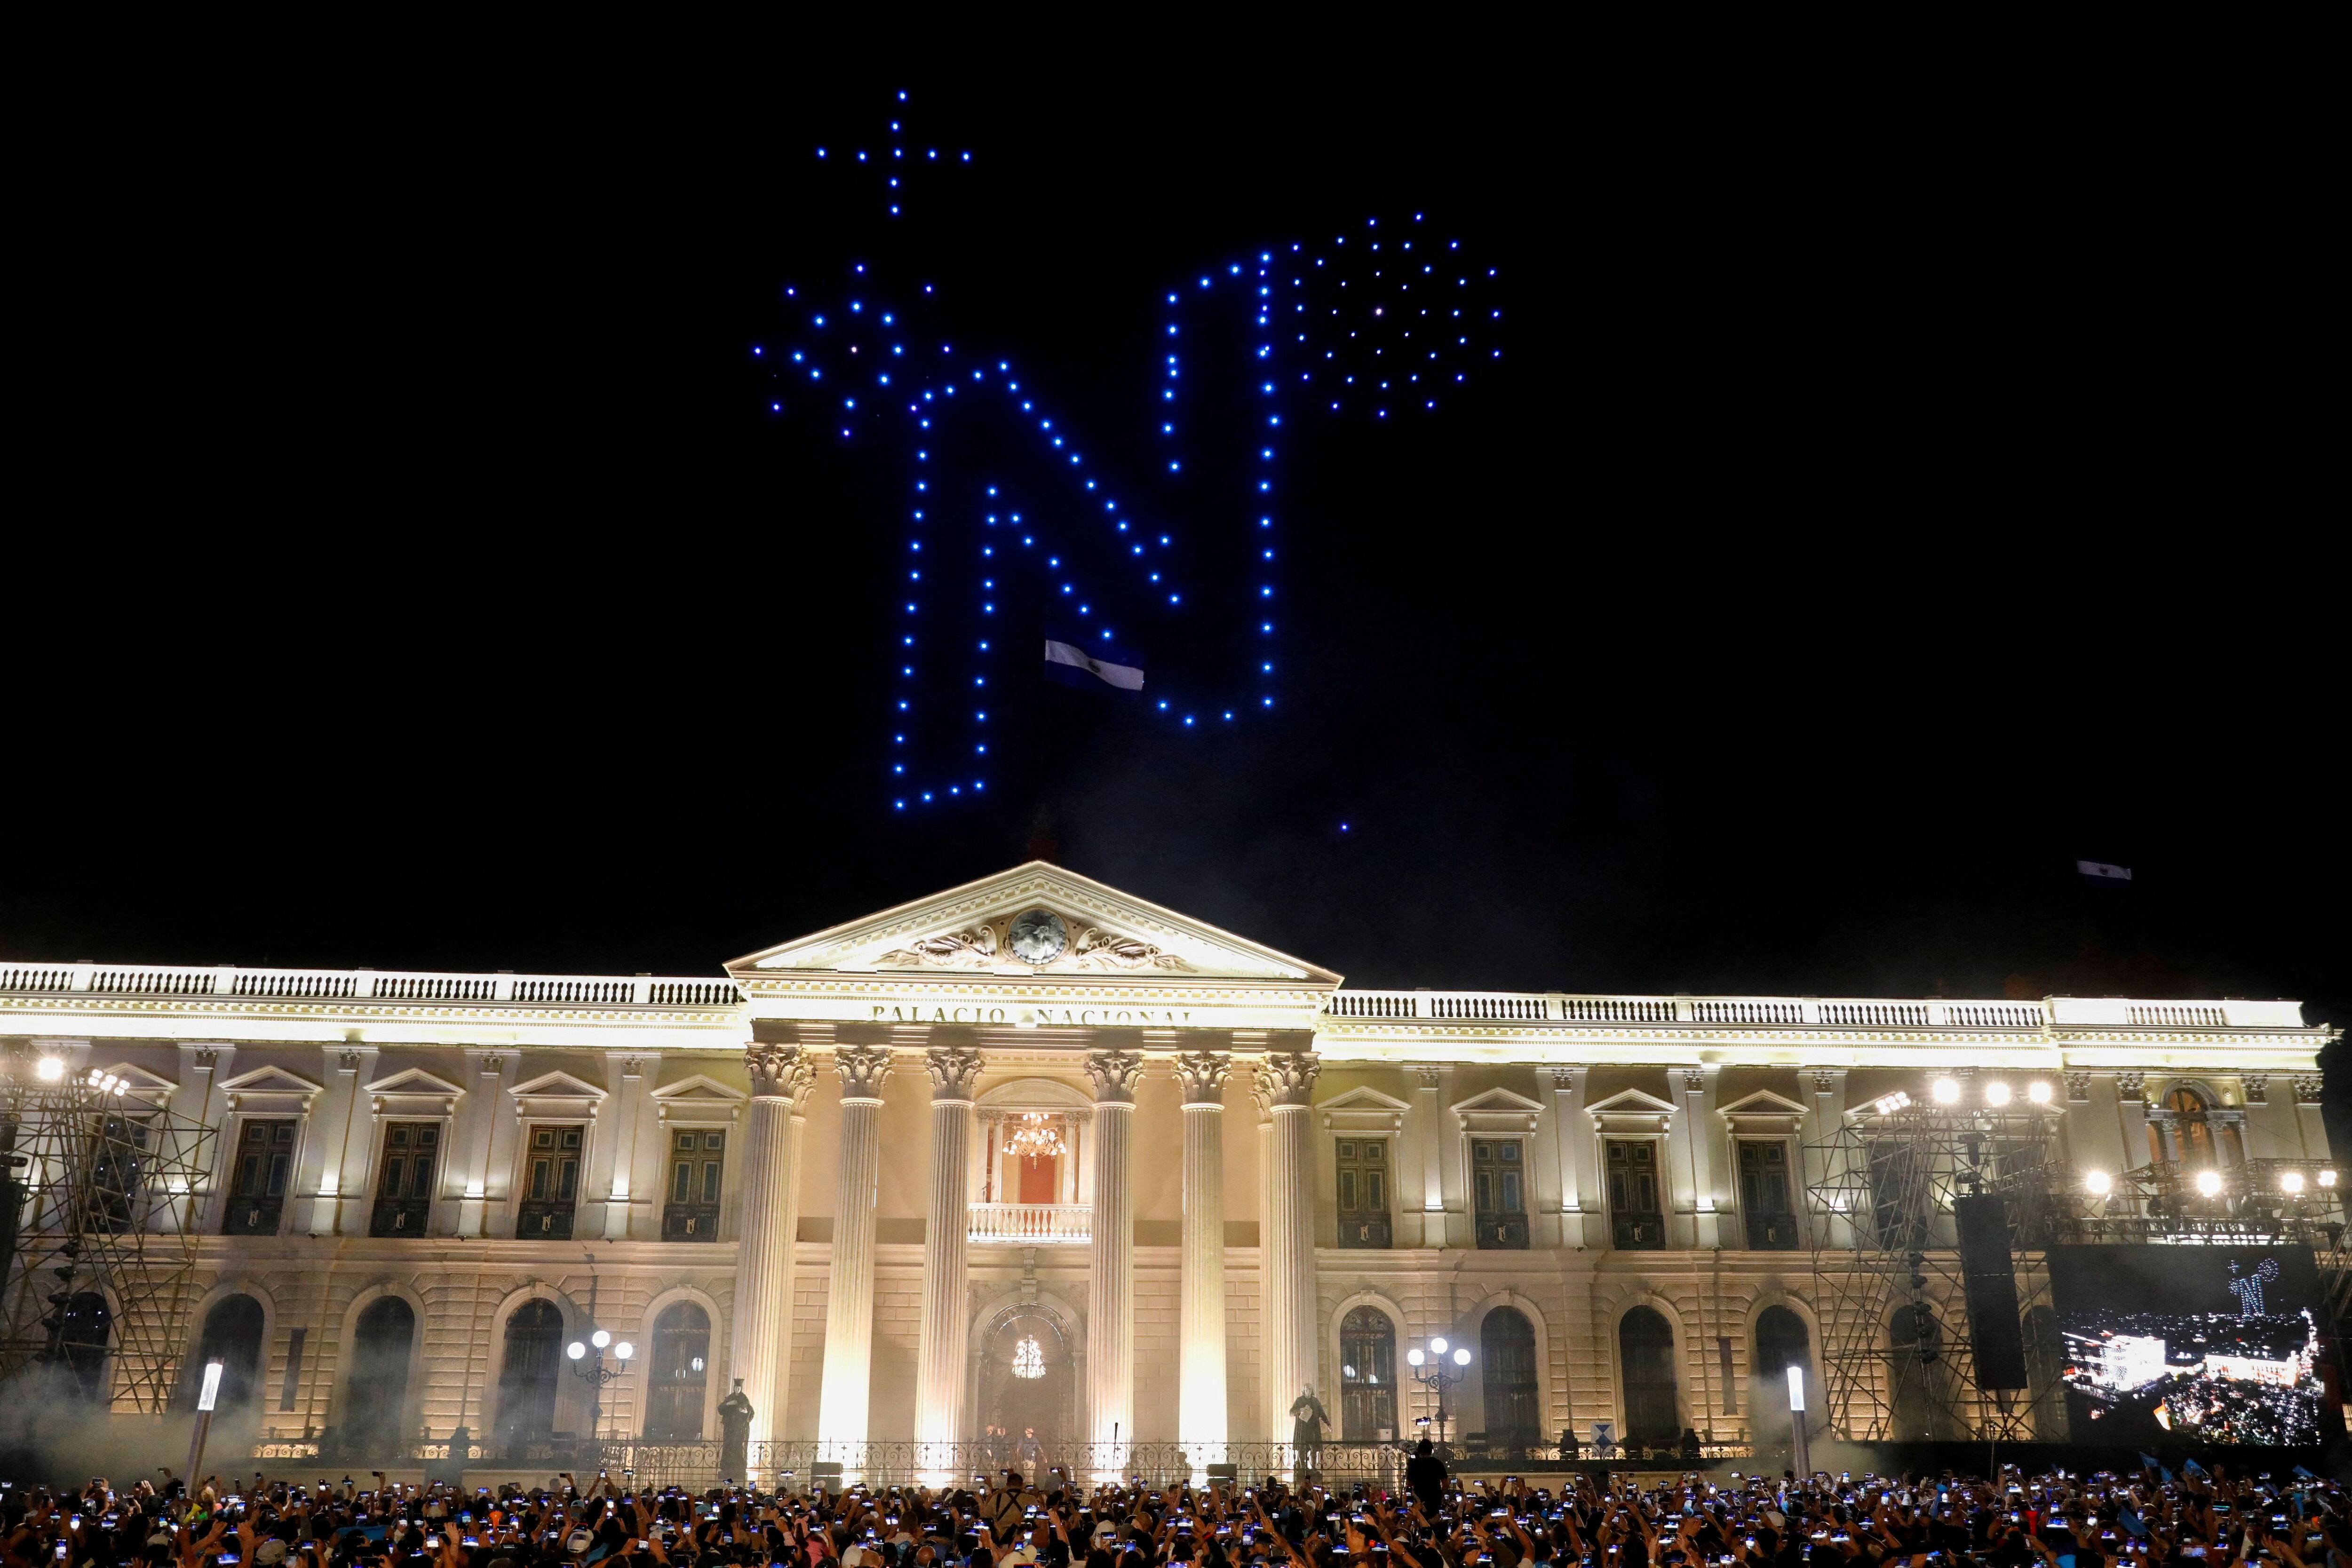 La letra "N" hecha con drones sobre el Palacio Nacional (REUTERS/Jose Cabezas)